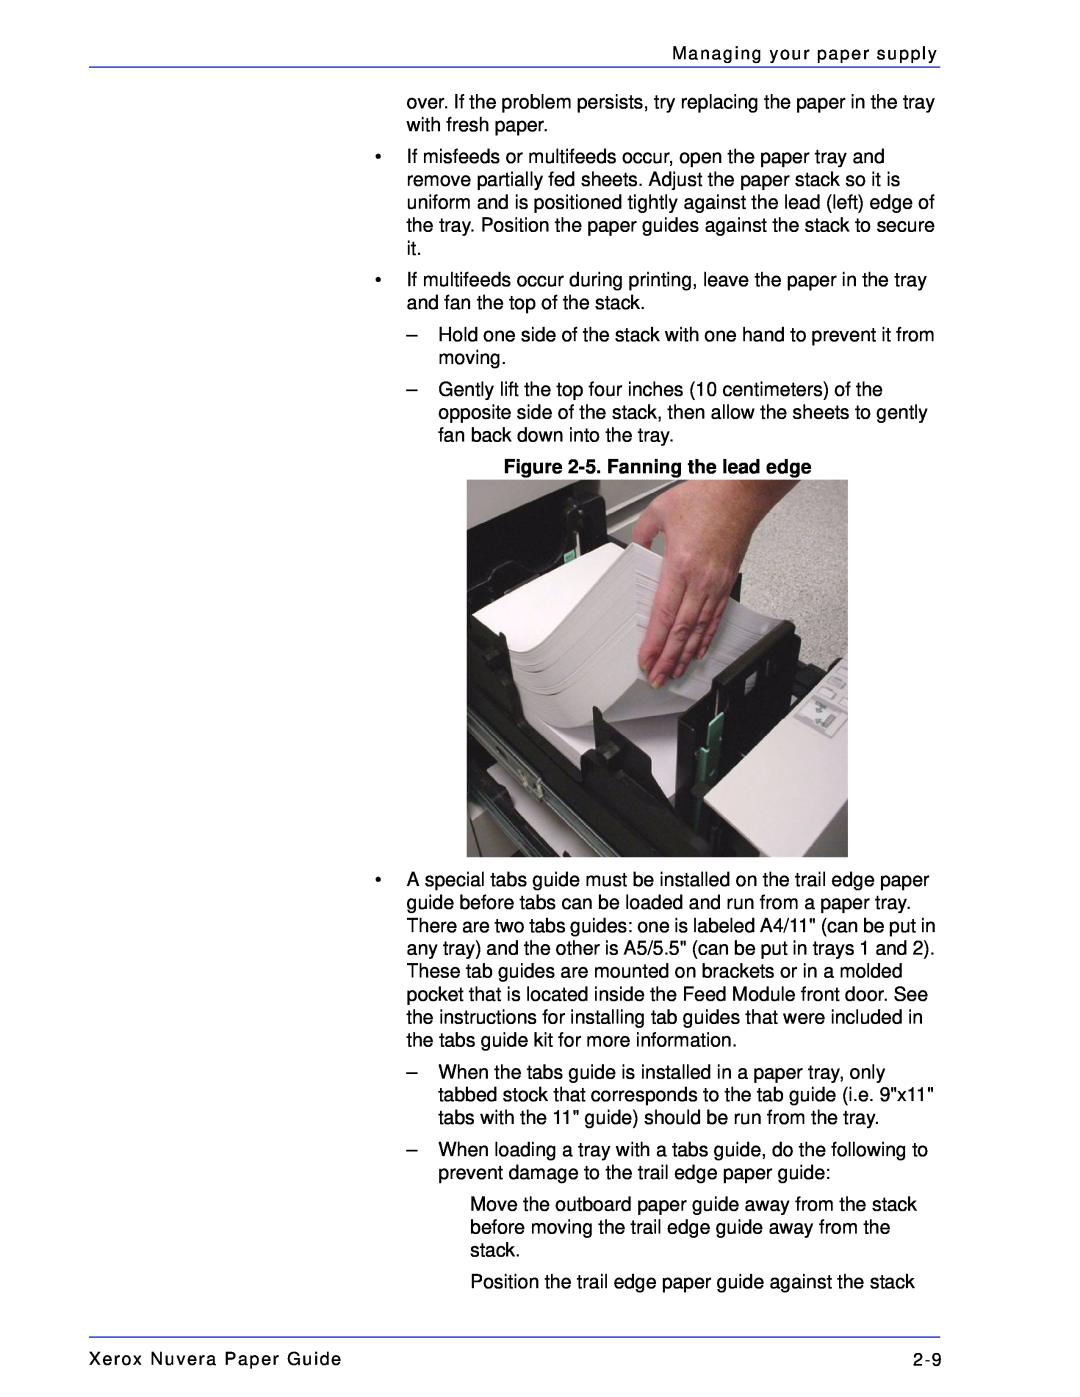 Xerox 701P28020 manual 5. Fanning the lead edge 